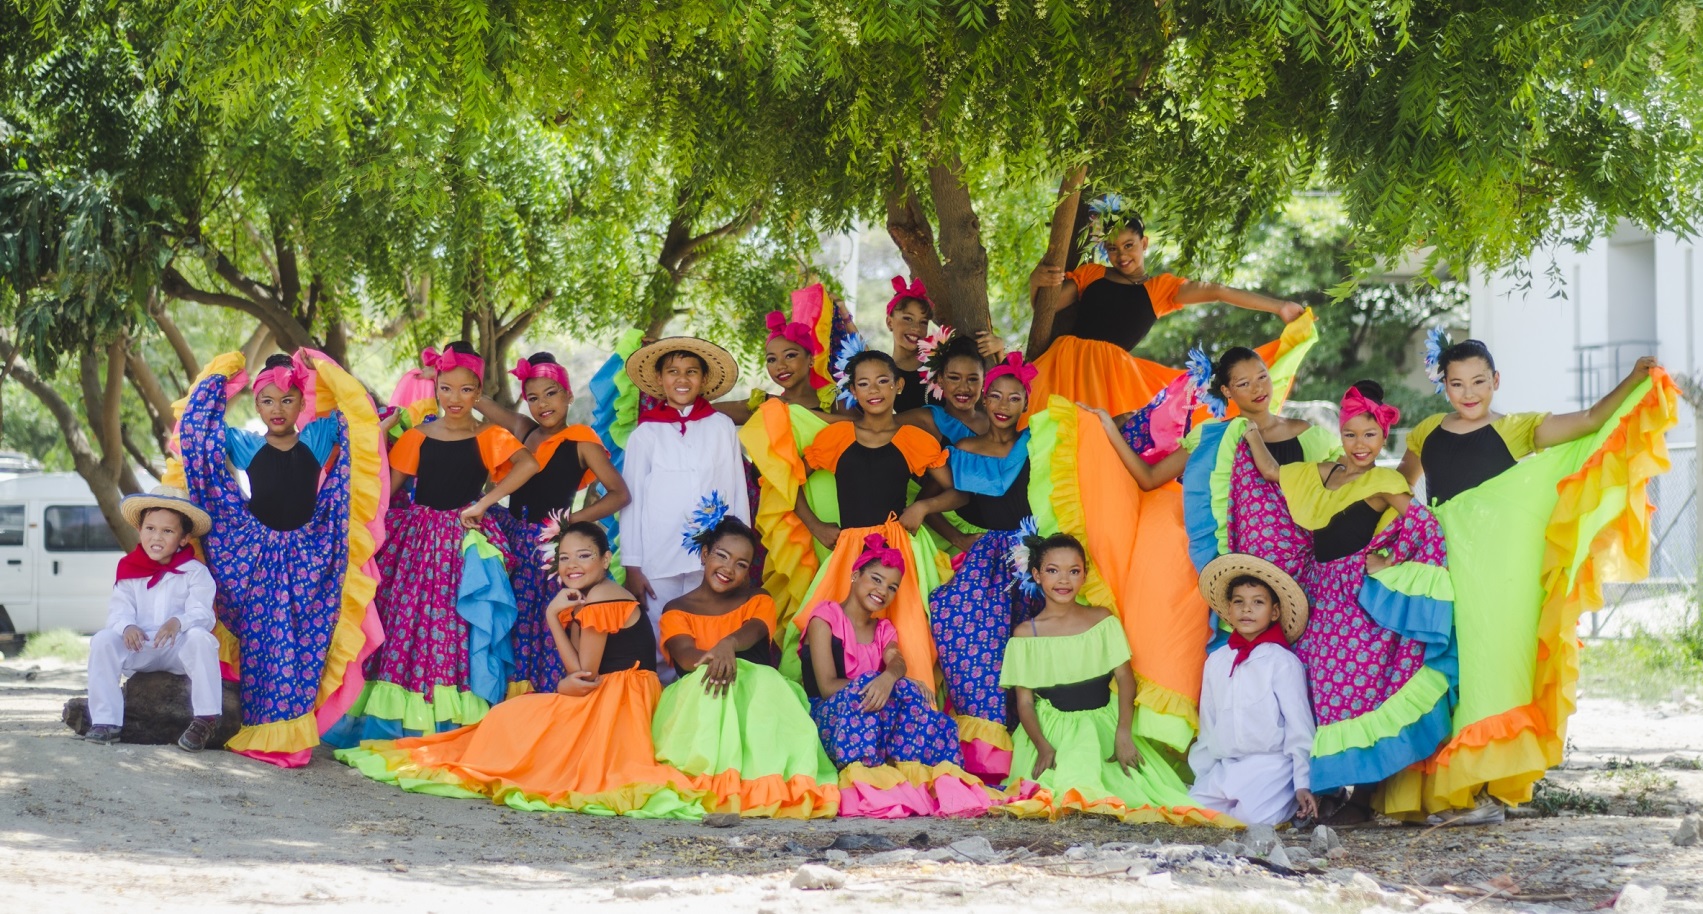 Gracias al apoyo del Distrito, grupo de danza samario se presentará en Festival de Danzas en César